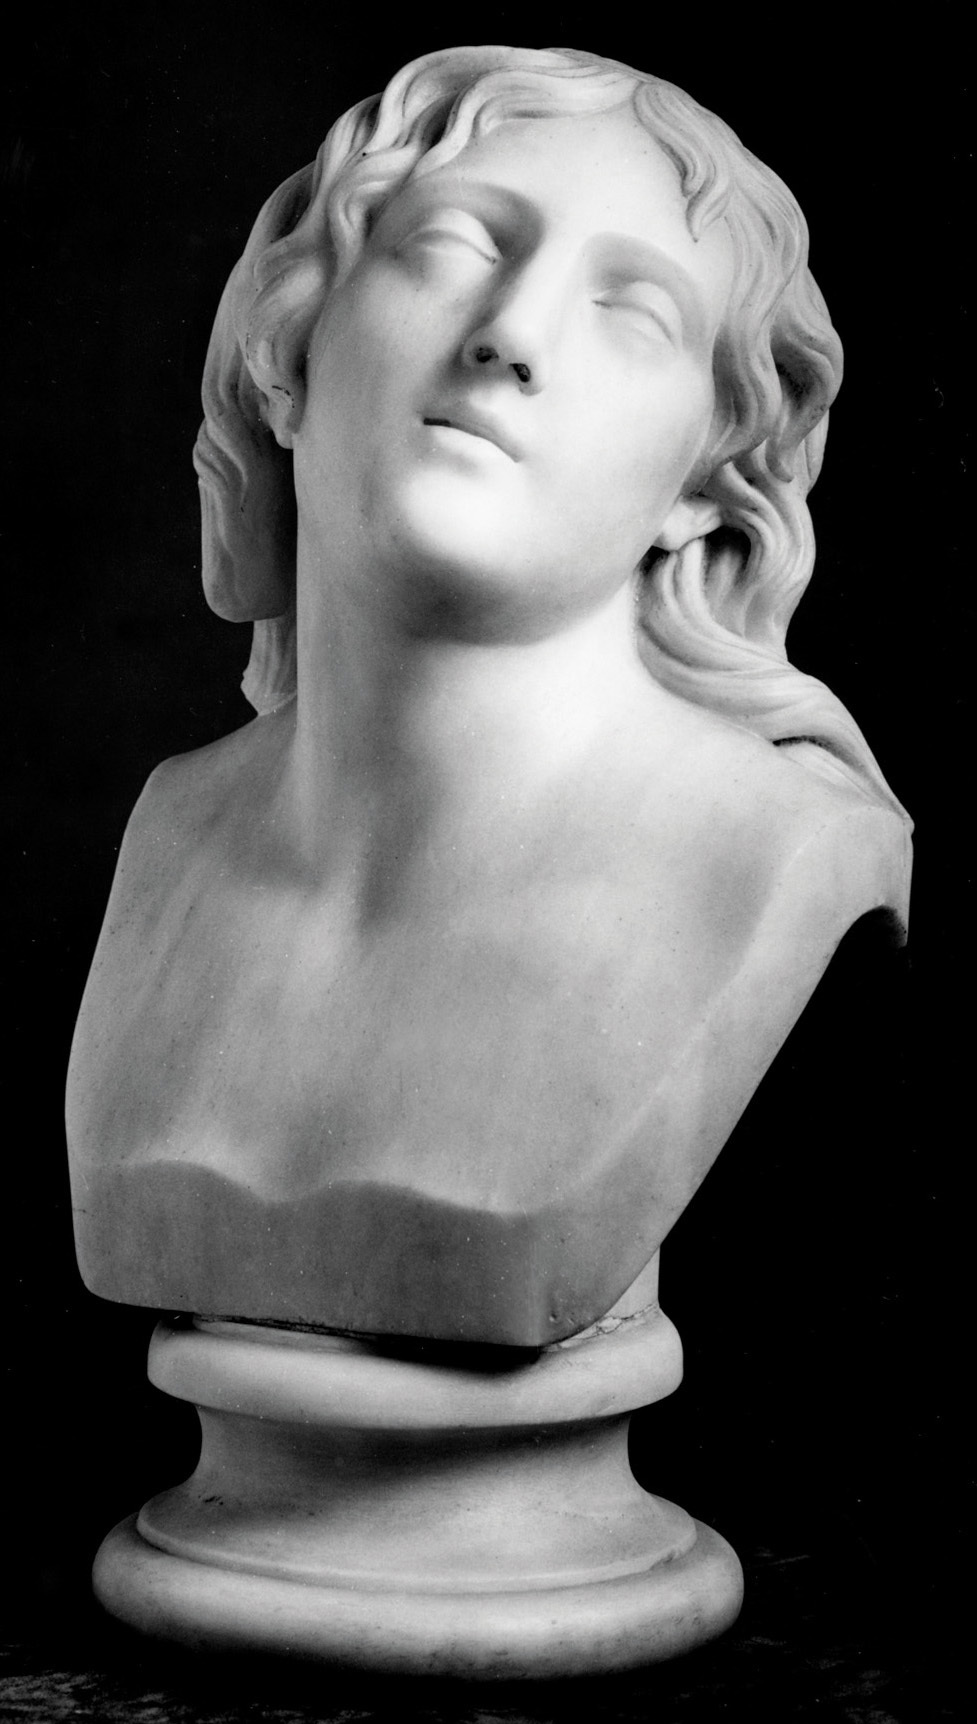     Ιωάννης Κόσσος, Ψυχή, 1858